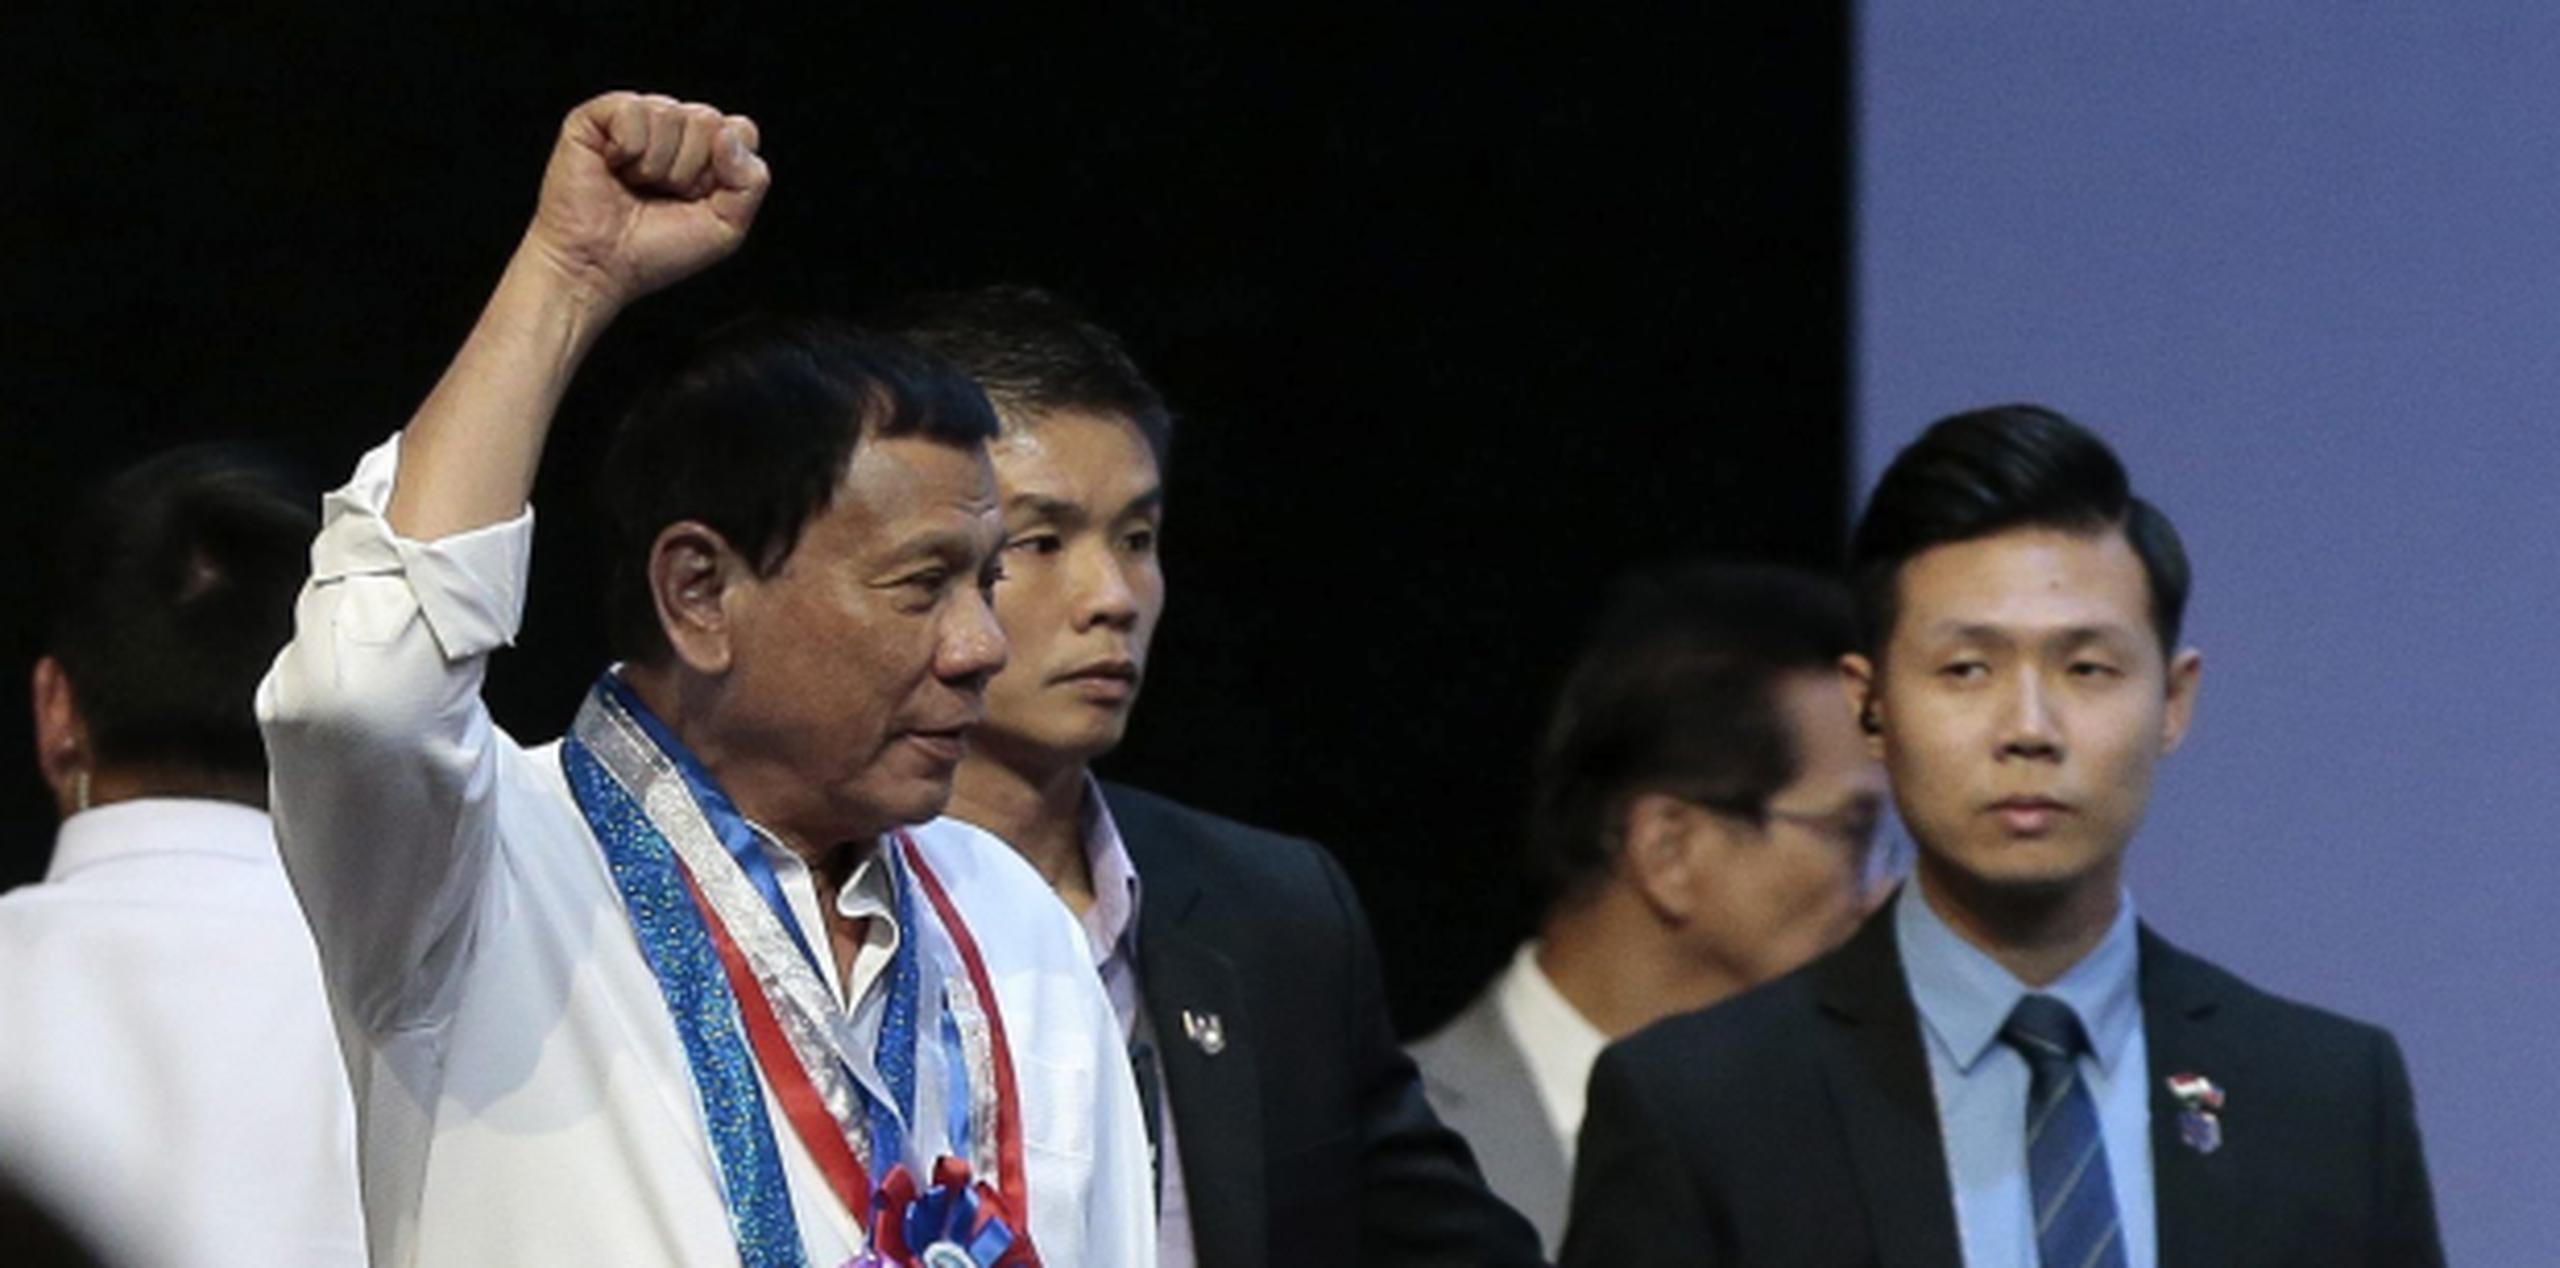 Duterte, saludando con el puño, dijo en una entrevista la semana pasada que había patrullado personalmente las calles de Davao en su motocicleta y había matado a gente. (EFE)